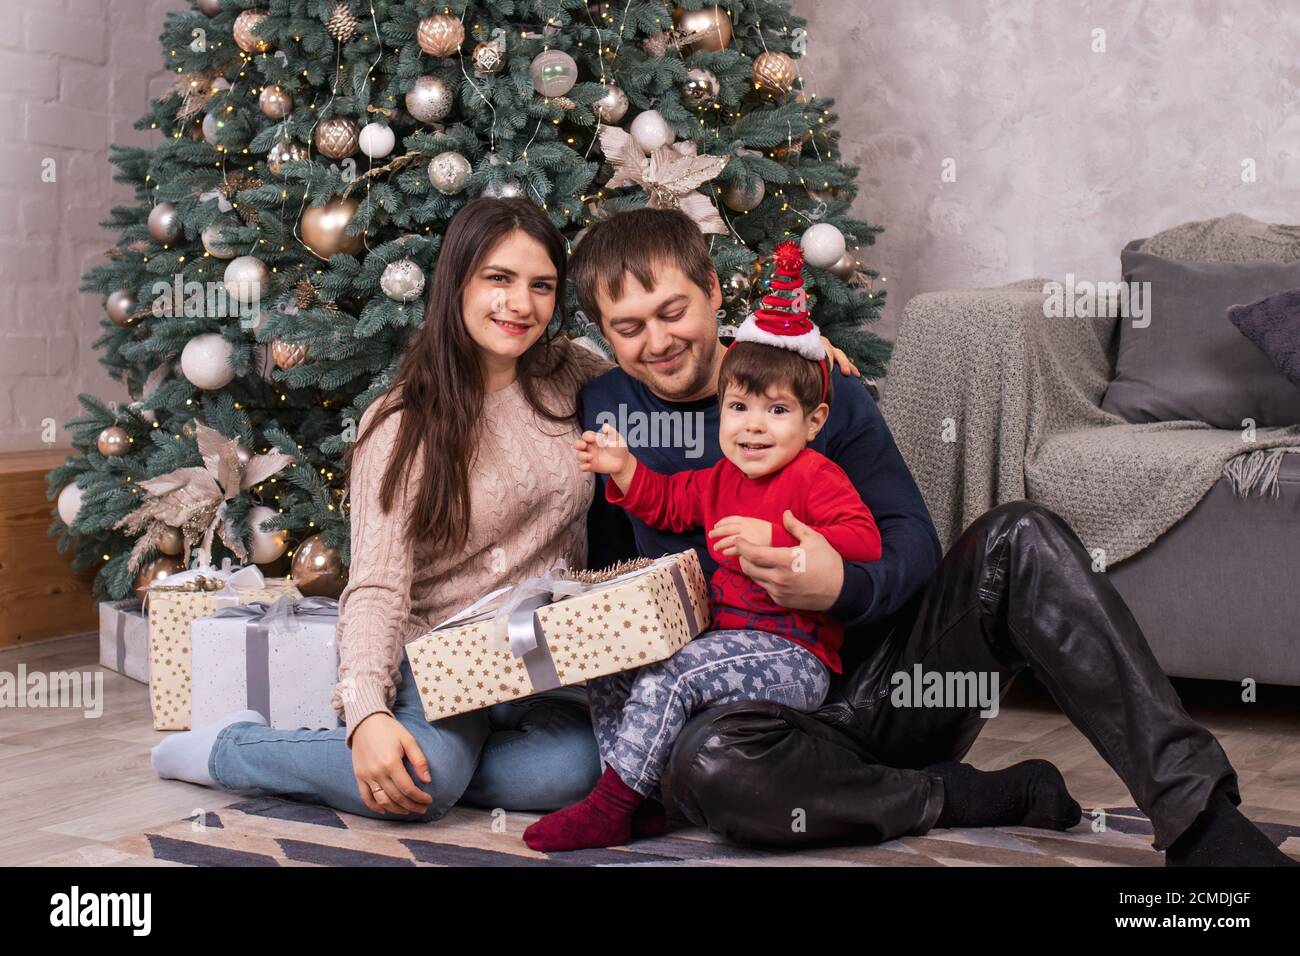 Maman, papa et jeune fils s'assoient près de l'arbre de Noël et tiennent des cadeaux. Vacances en famille nouvel an, cadeaux et un matin magique. Banque D'Images